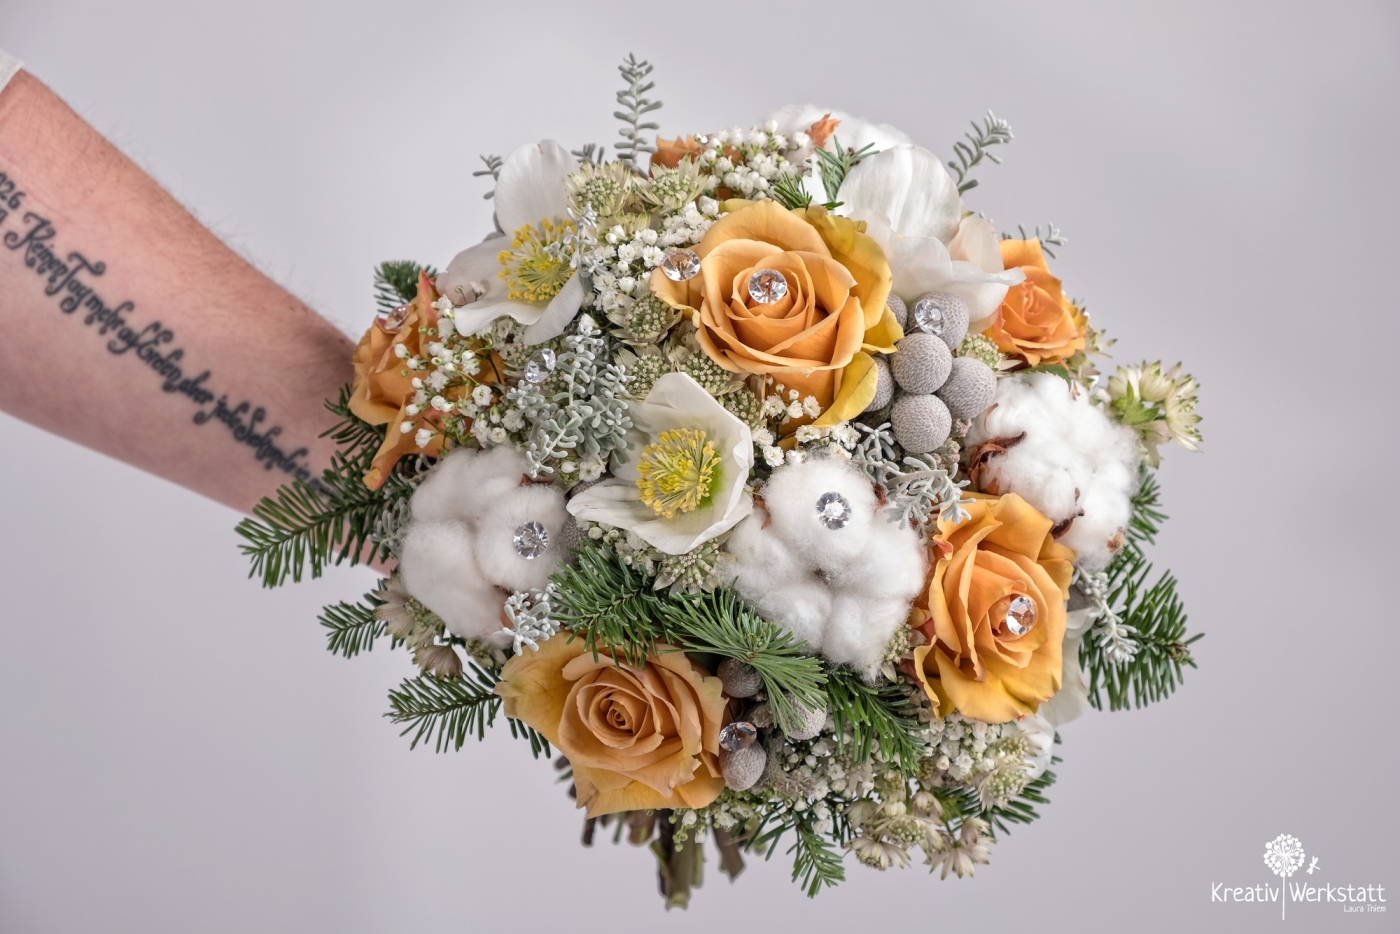 Nahaufnahme eines Brautstraußes mit orangefarbenen Rosen und weißen Blumen, gehalten von der tätowierten Braut.